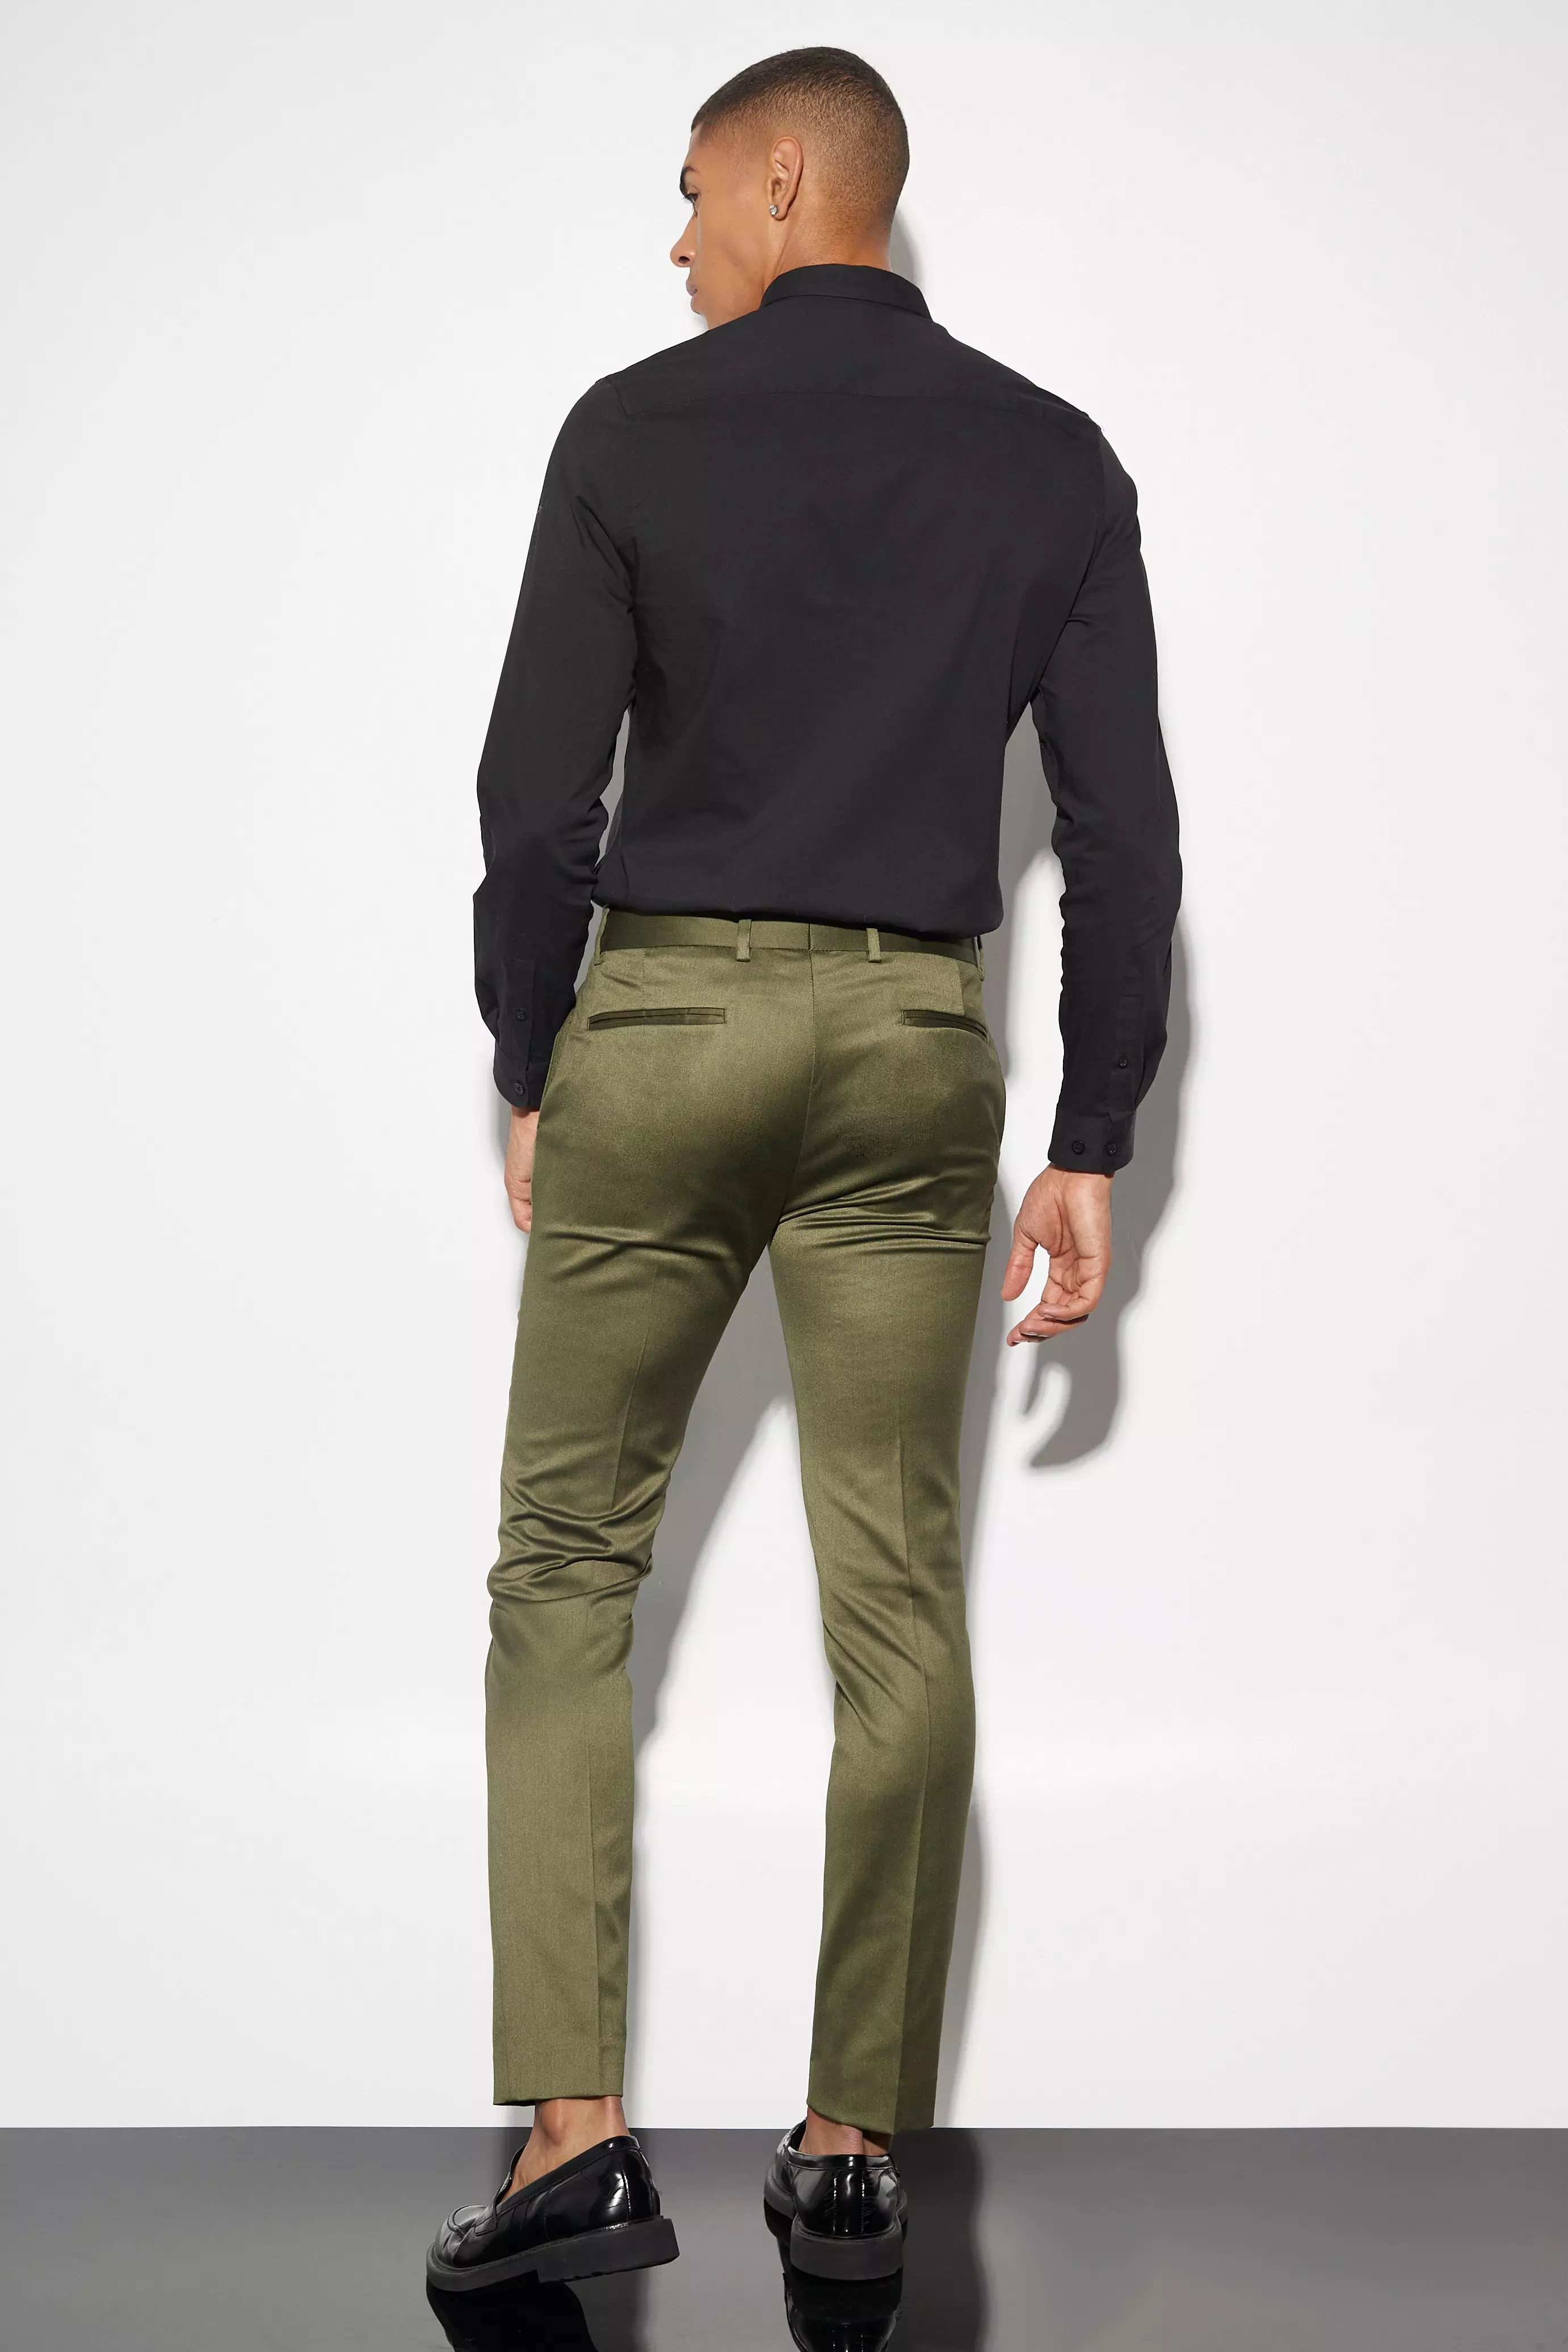 Montorsop Tailored Pants - Olive - Slim Stretch Tailored Pants, Suit Pants